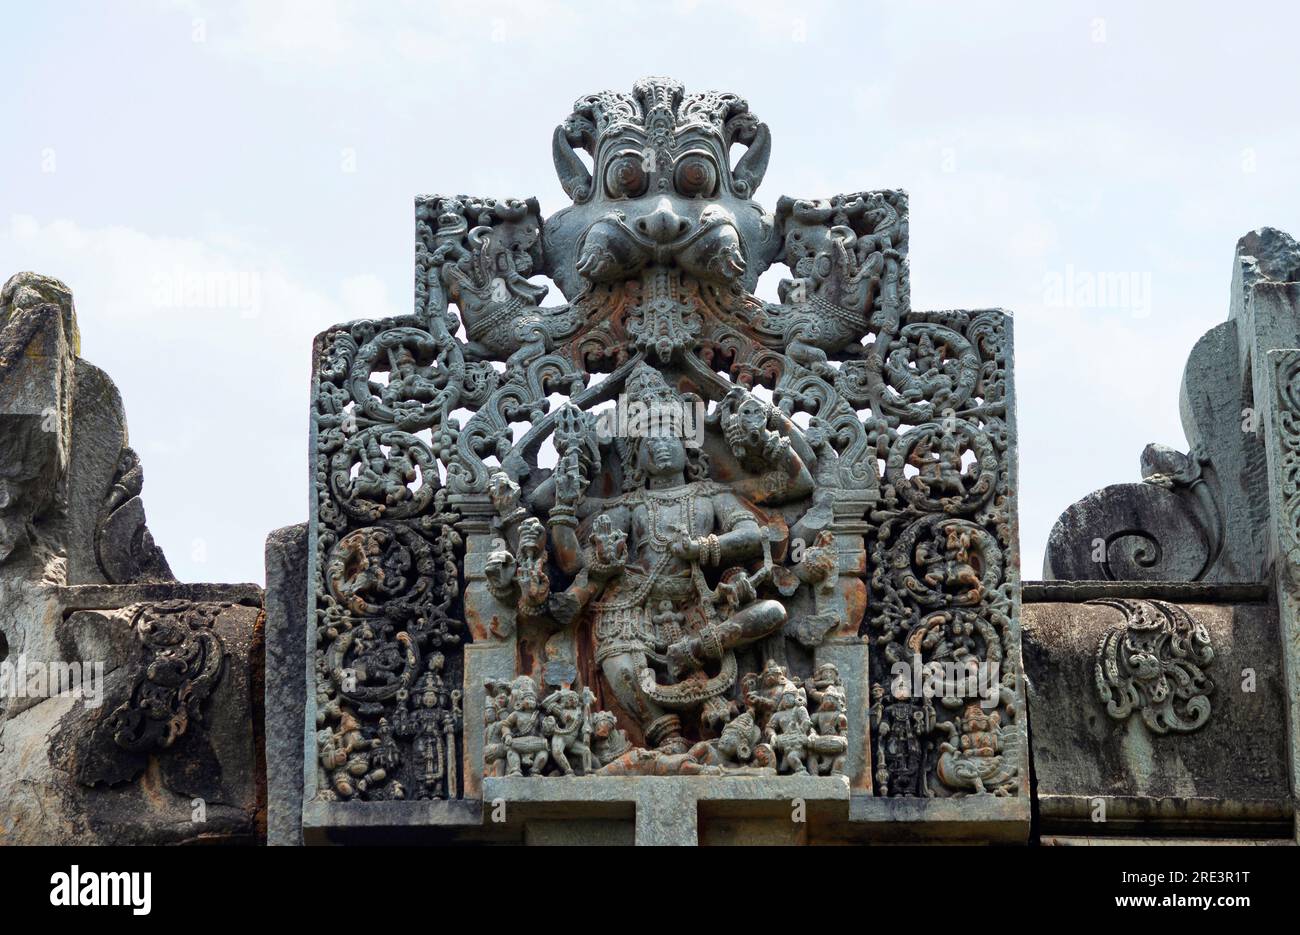 Talla Escultura del Señor llamada Aghoreshwara en el complejo del Templo Chandramauleshwara, Unkal, Hubli, Karnataka, India Foto de stock